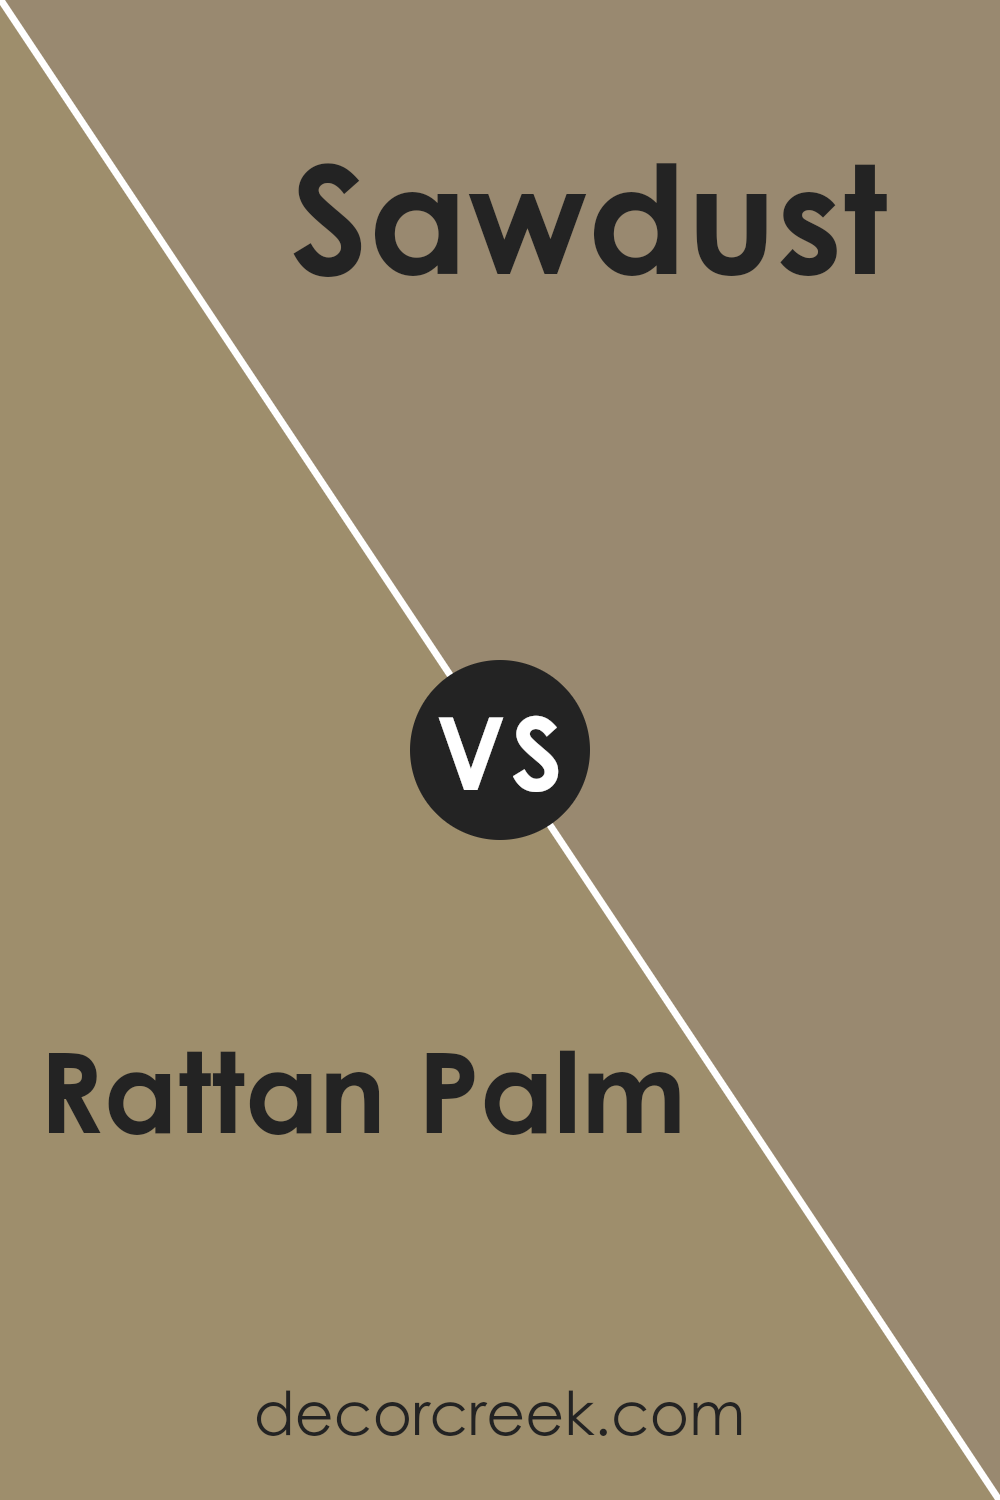 rattan_palm_sw_9533_vs_sawdust_sw_6158